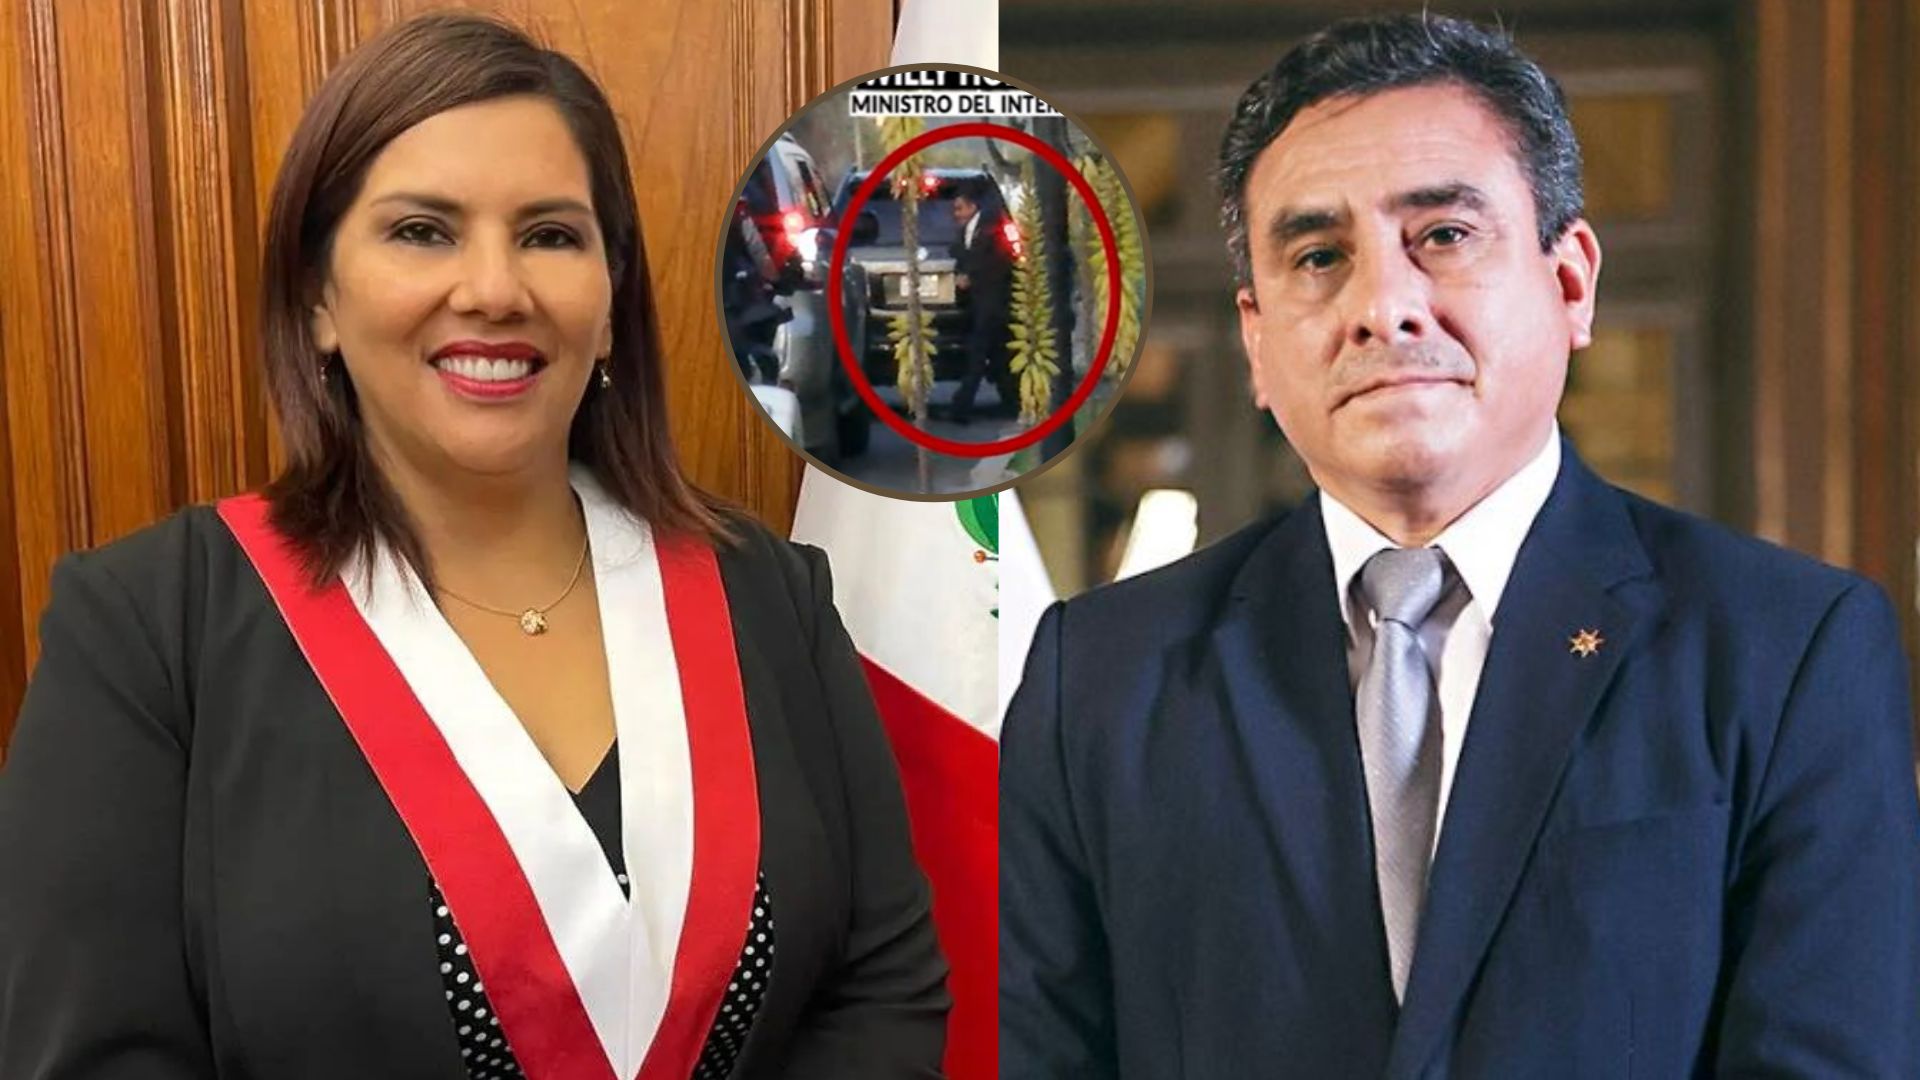 Digna Calle niega reunión con ministro Willy Huerta “por algún tipo de negociación o agradecimiento”